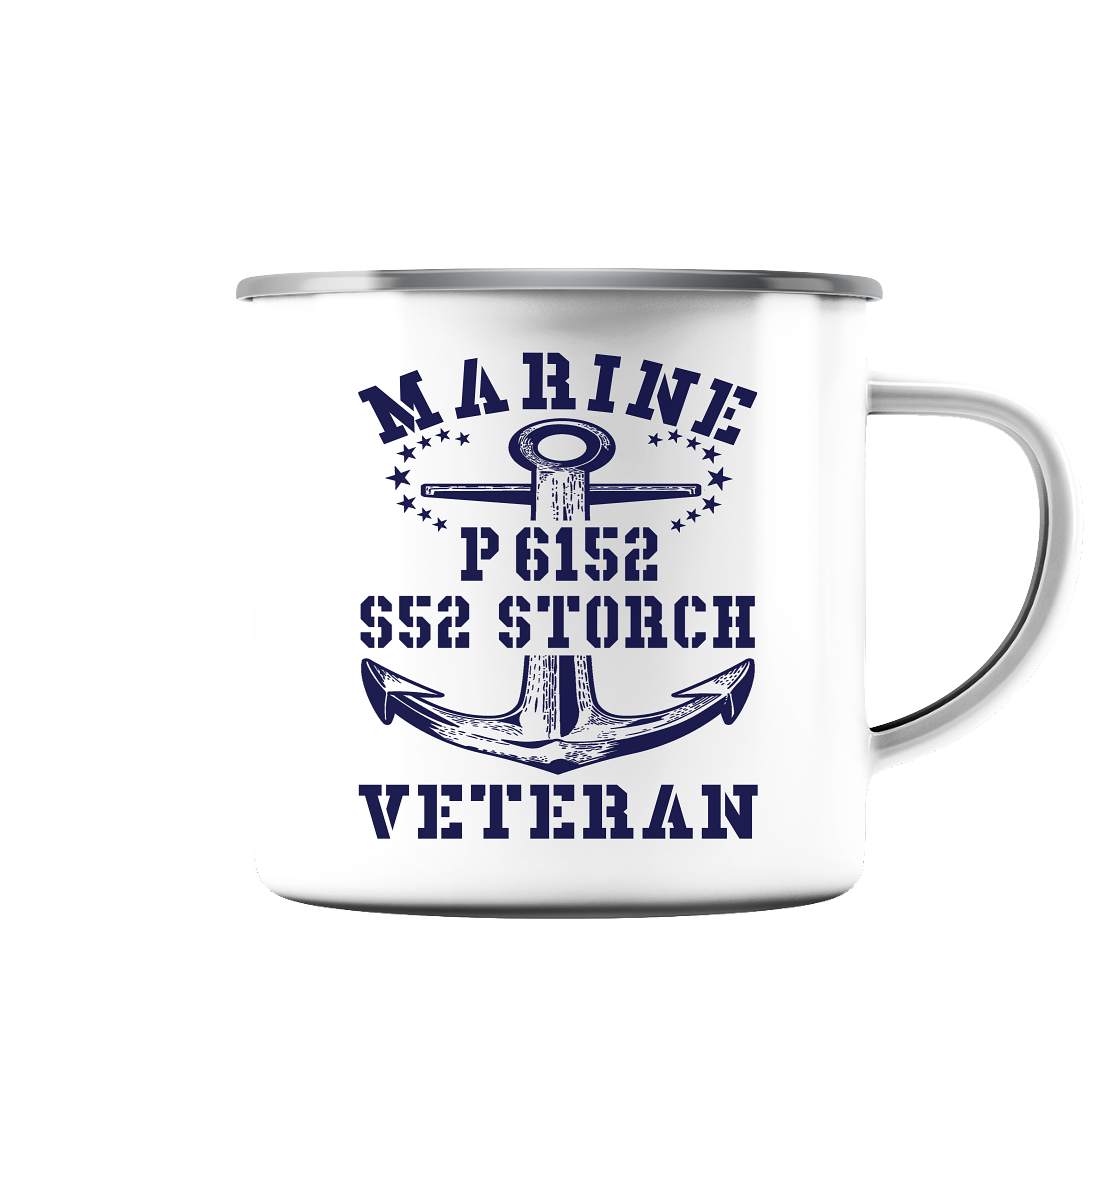 P6152 S52 STORCH Marine Veteran - Emaille Tasse (Silber)